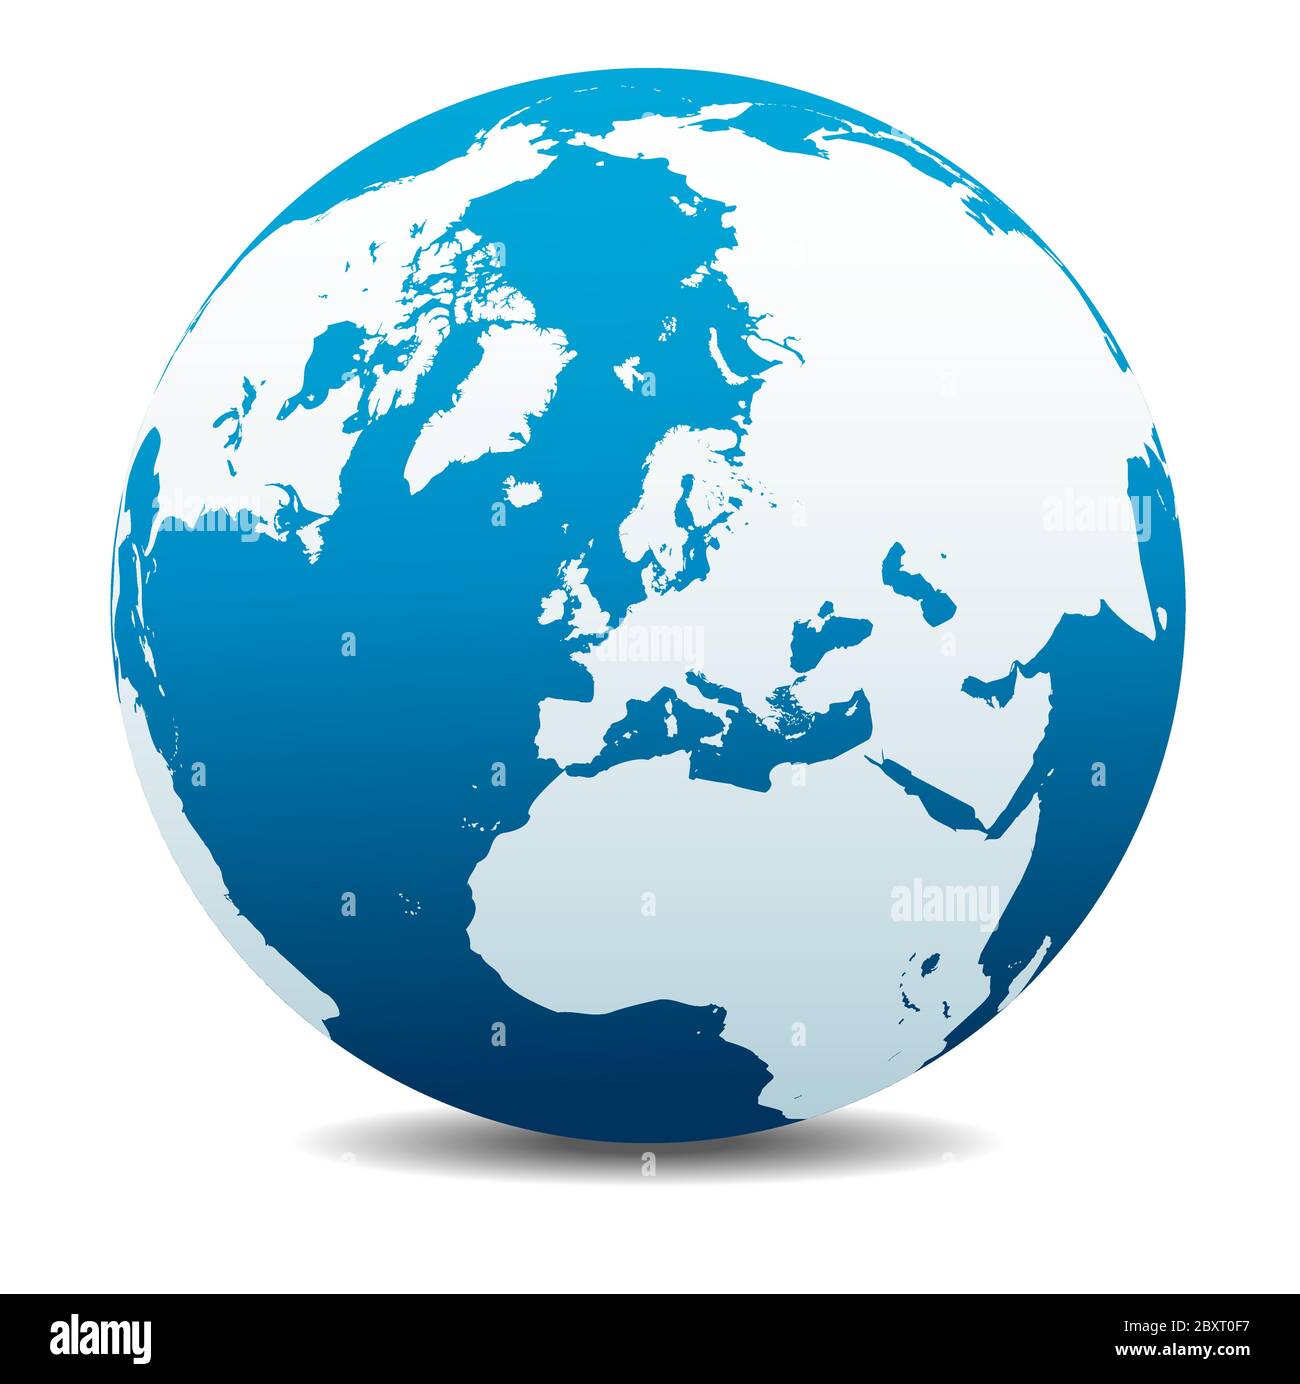 Polo Nord Europa Top of the World, icona della mappa vettoriale del globo mondiale, Terra. Tutti gli elementi si trovano su singoli livelli nel file vettoriale. Illustrazione Vettoriale